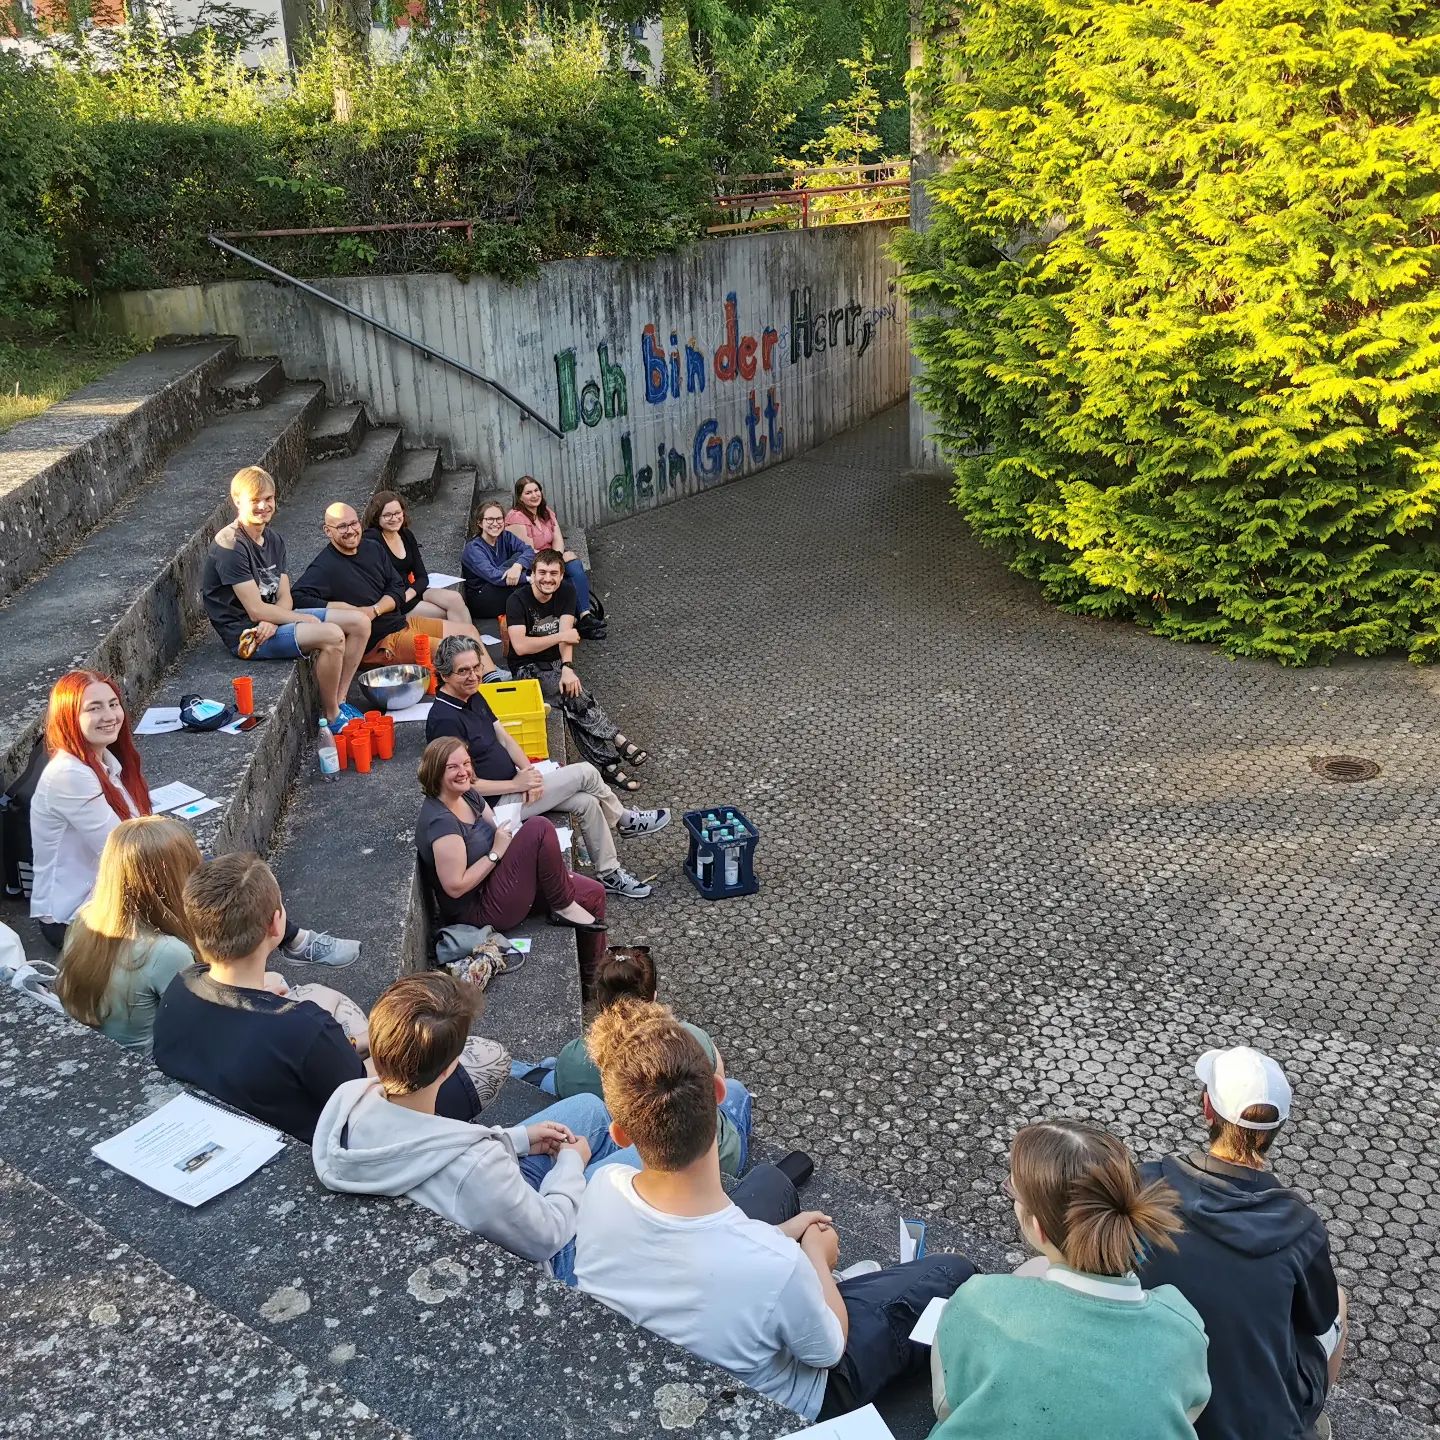 Vollversammlung der Ev. Jugendvertretung im Dekanat Mainz: in Thomas - immer wieder schön! 😇

#evjugendmainz #ejvd #ejhn #jugendpolitik #ekhn #ekhn2030 #vollversammlung #mainzeroberstadt #vv